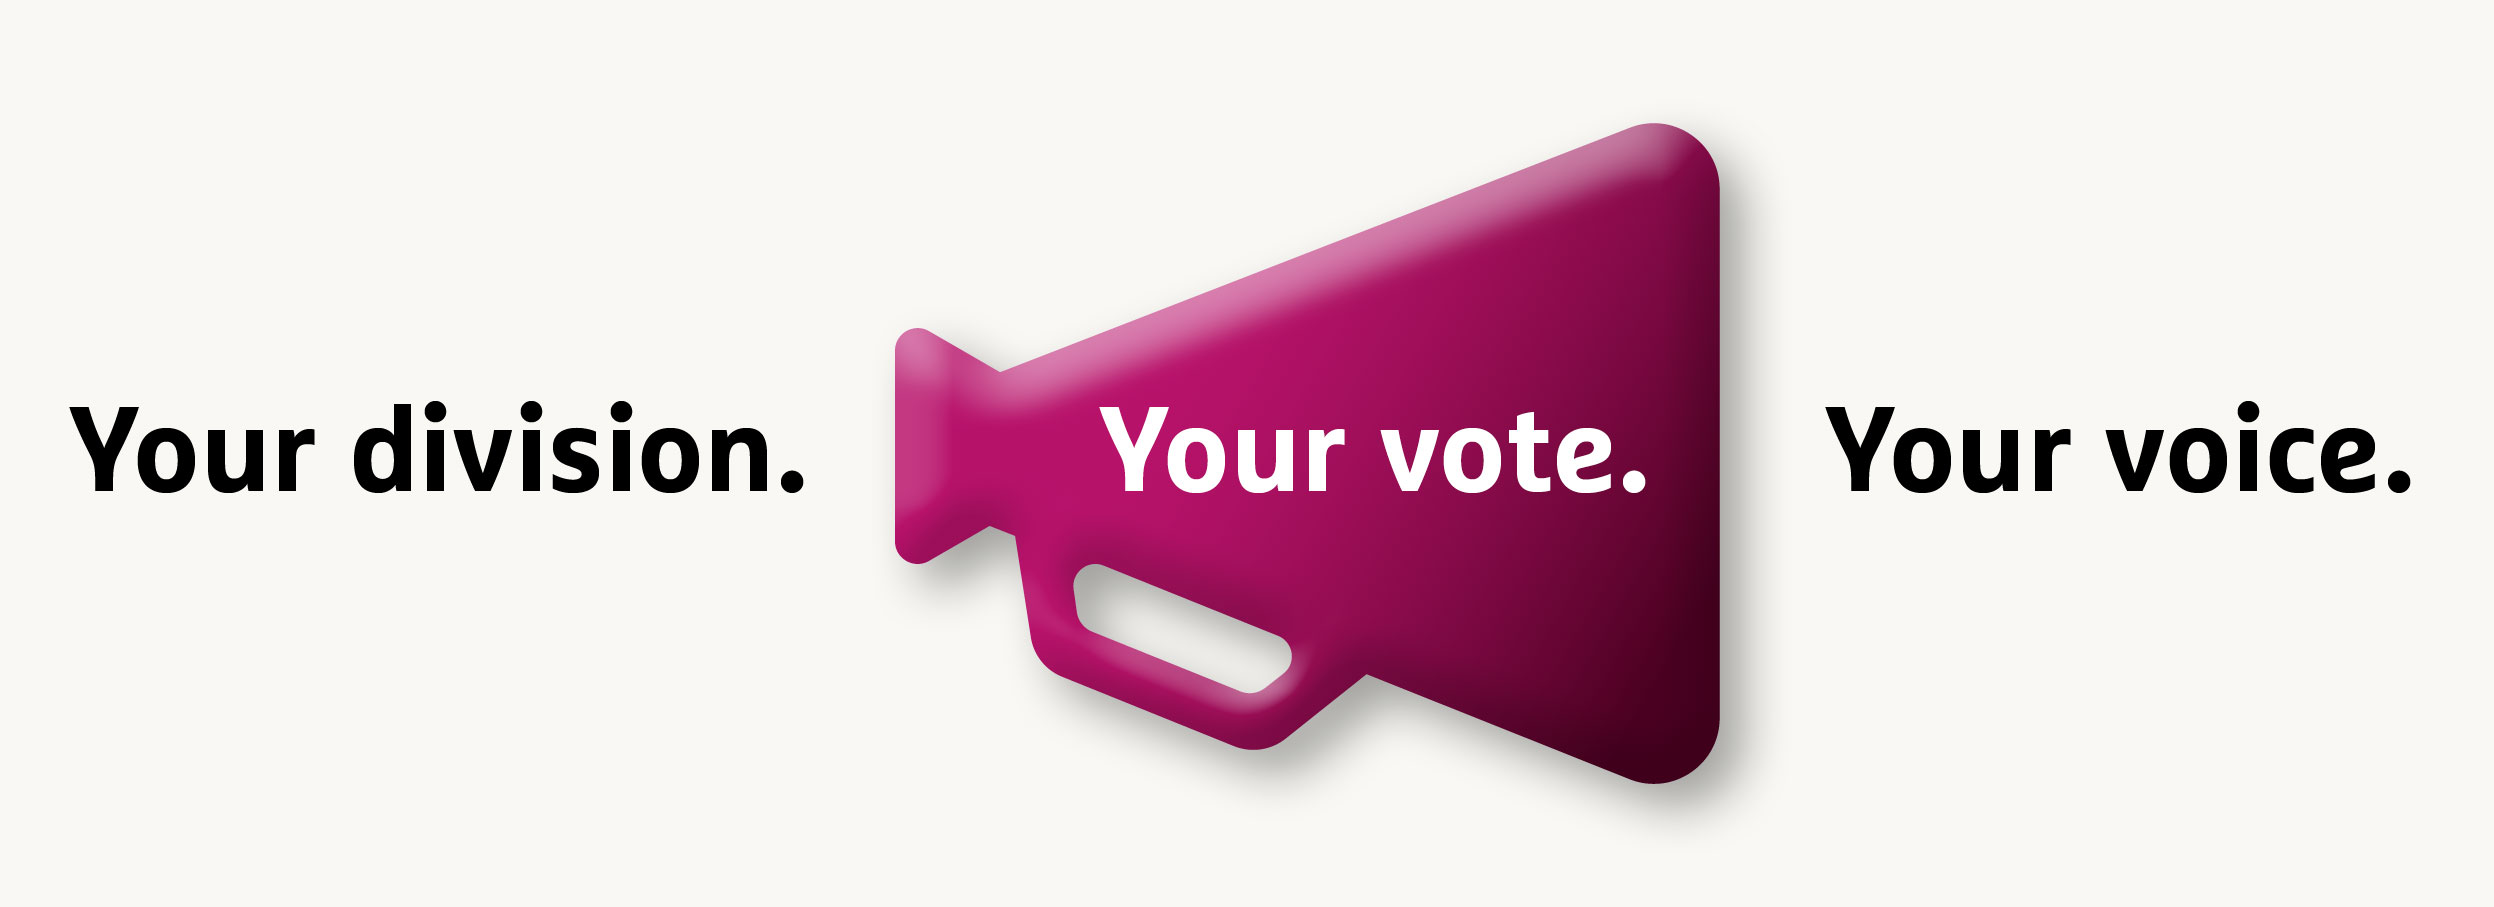 Legislative Council election tagline - Your division. Your vote. Your voice.